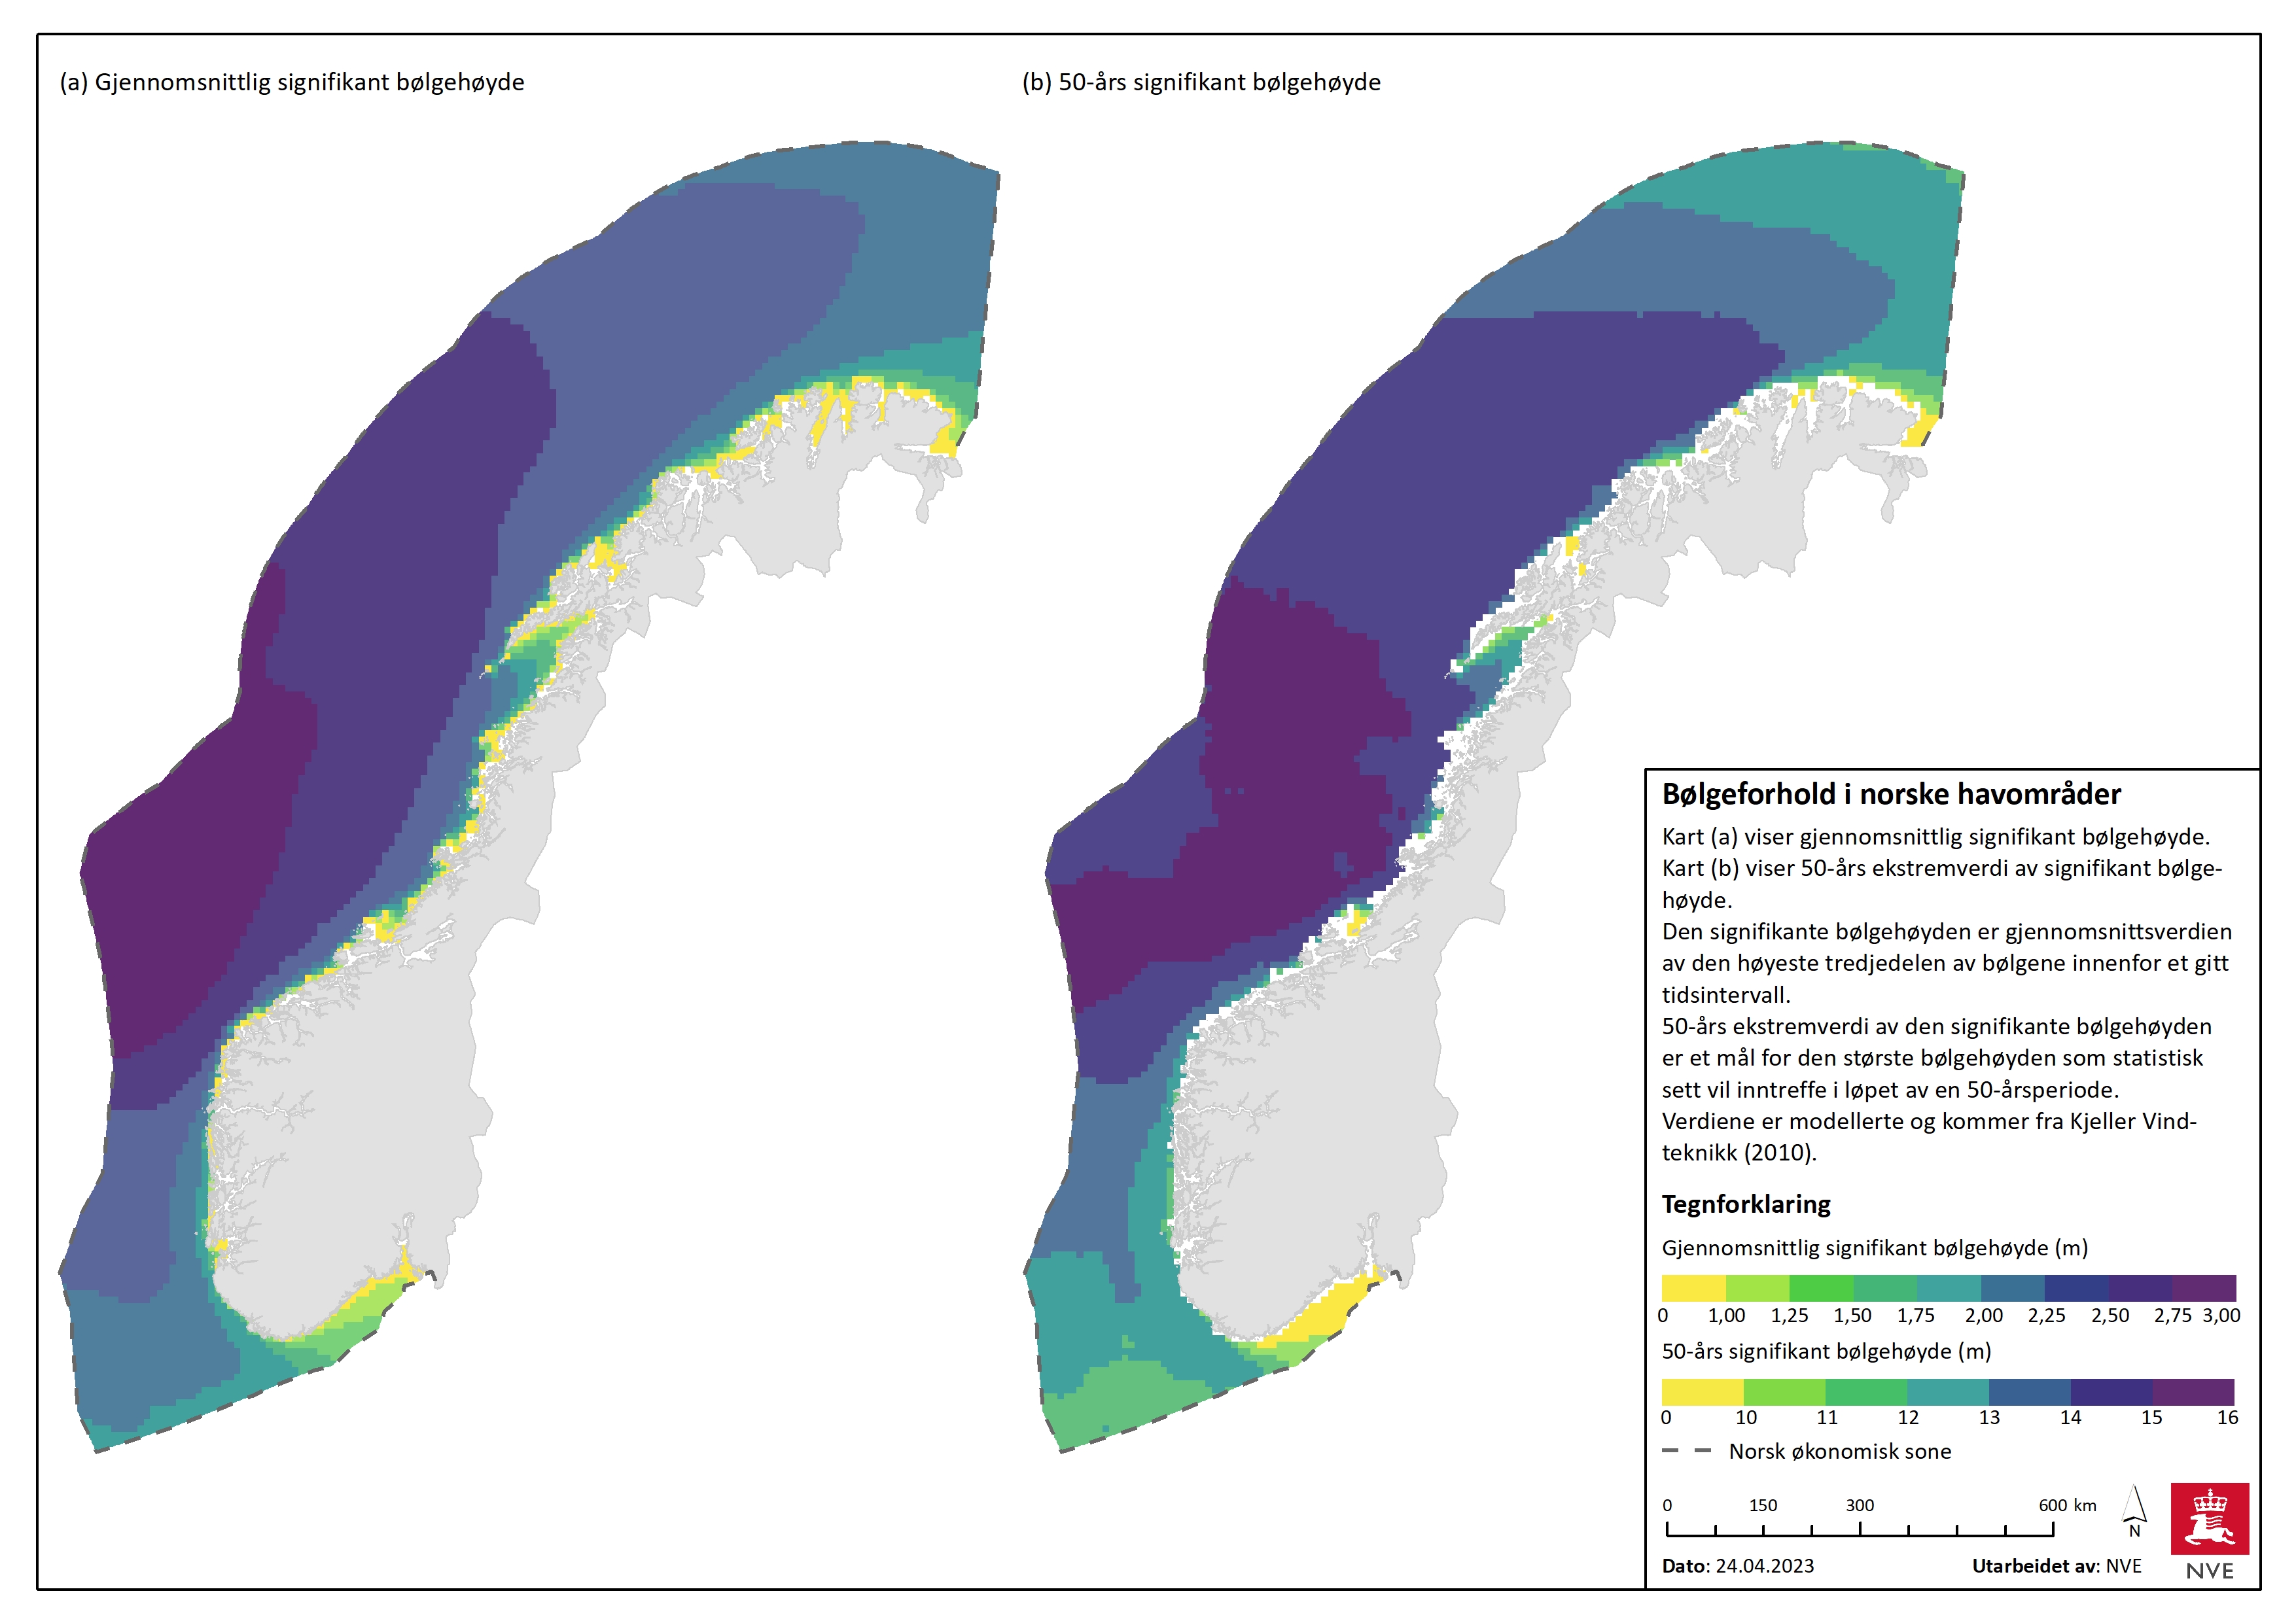 Bølgeforhold i norske havområder.